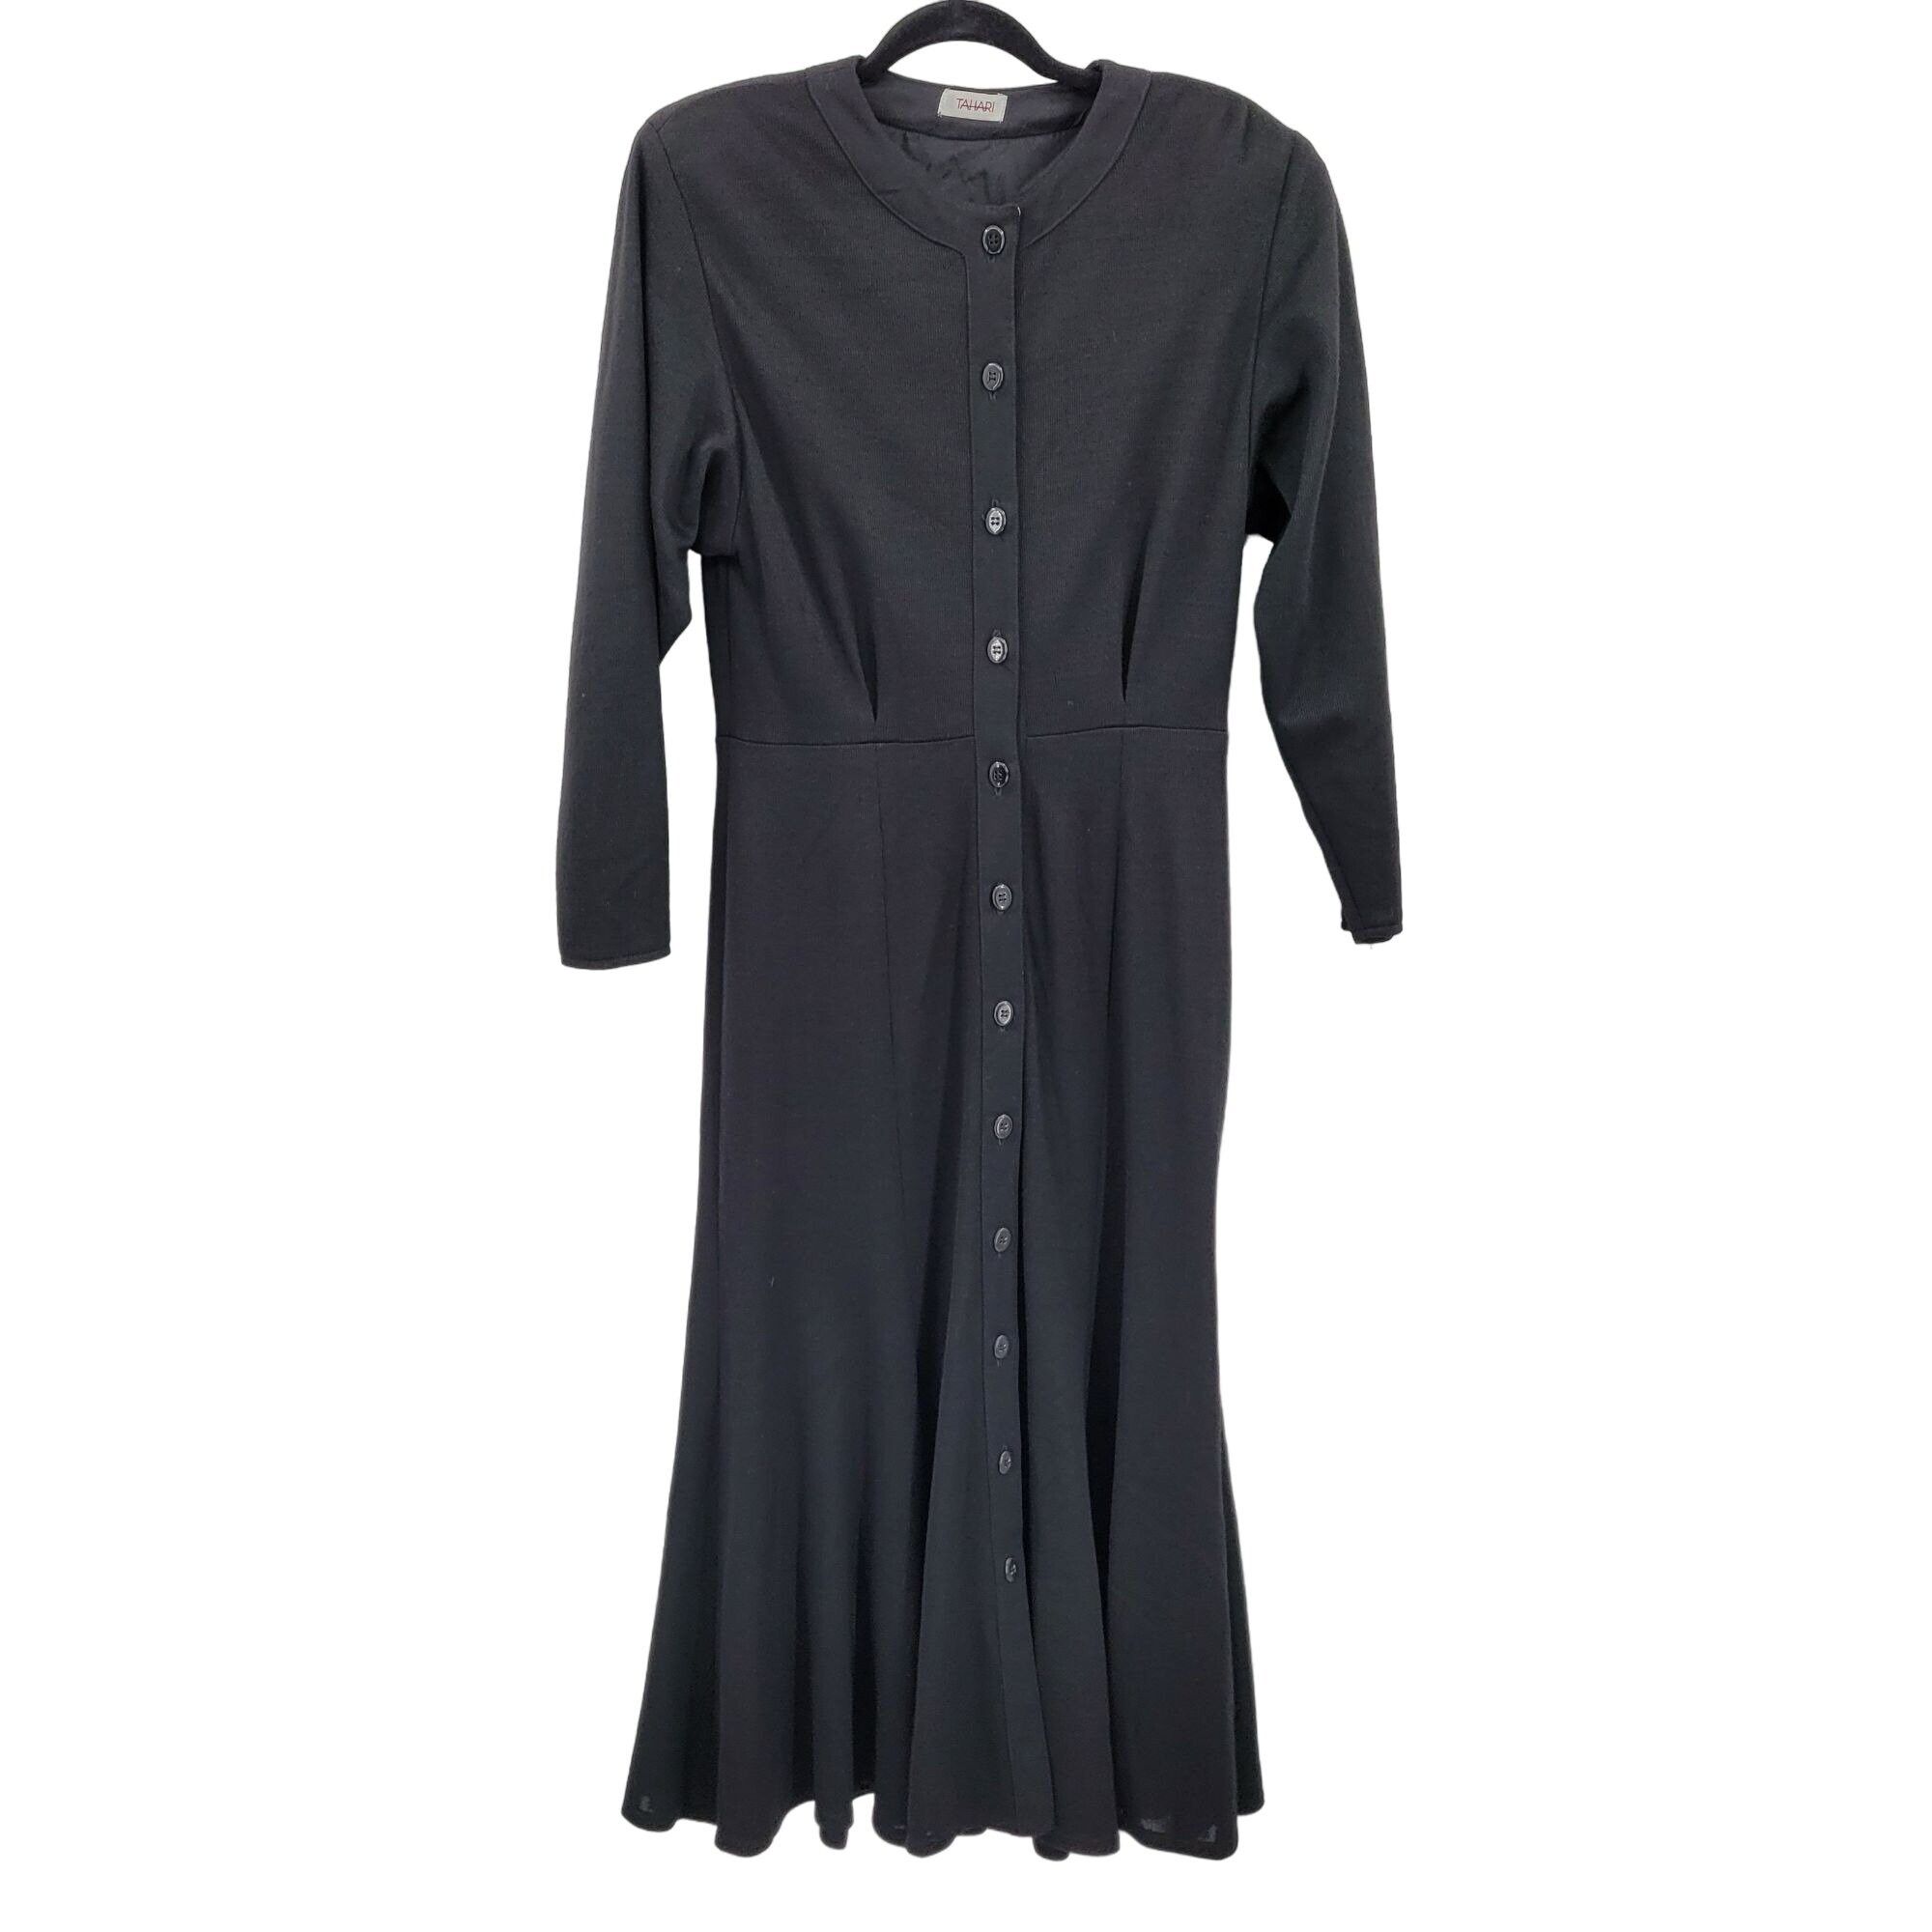 Elie Tahari 80s Tahari Dress Wool Knit Modest Long Sleeve Maxi Black Size M / US 6-8 / IT 42-44 - 2 Preview